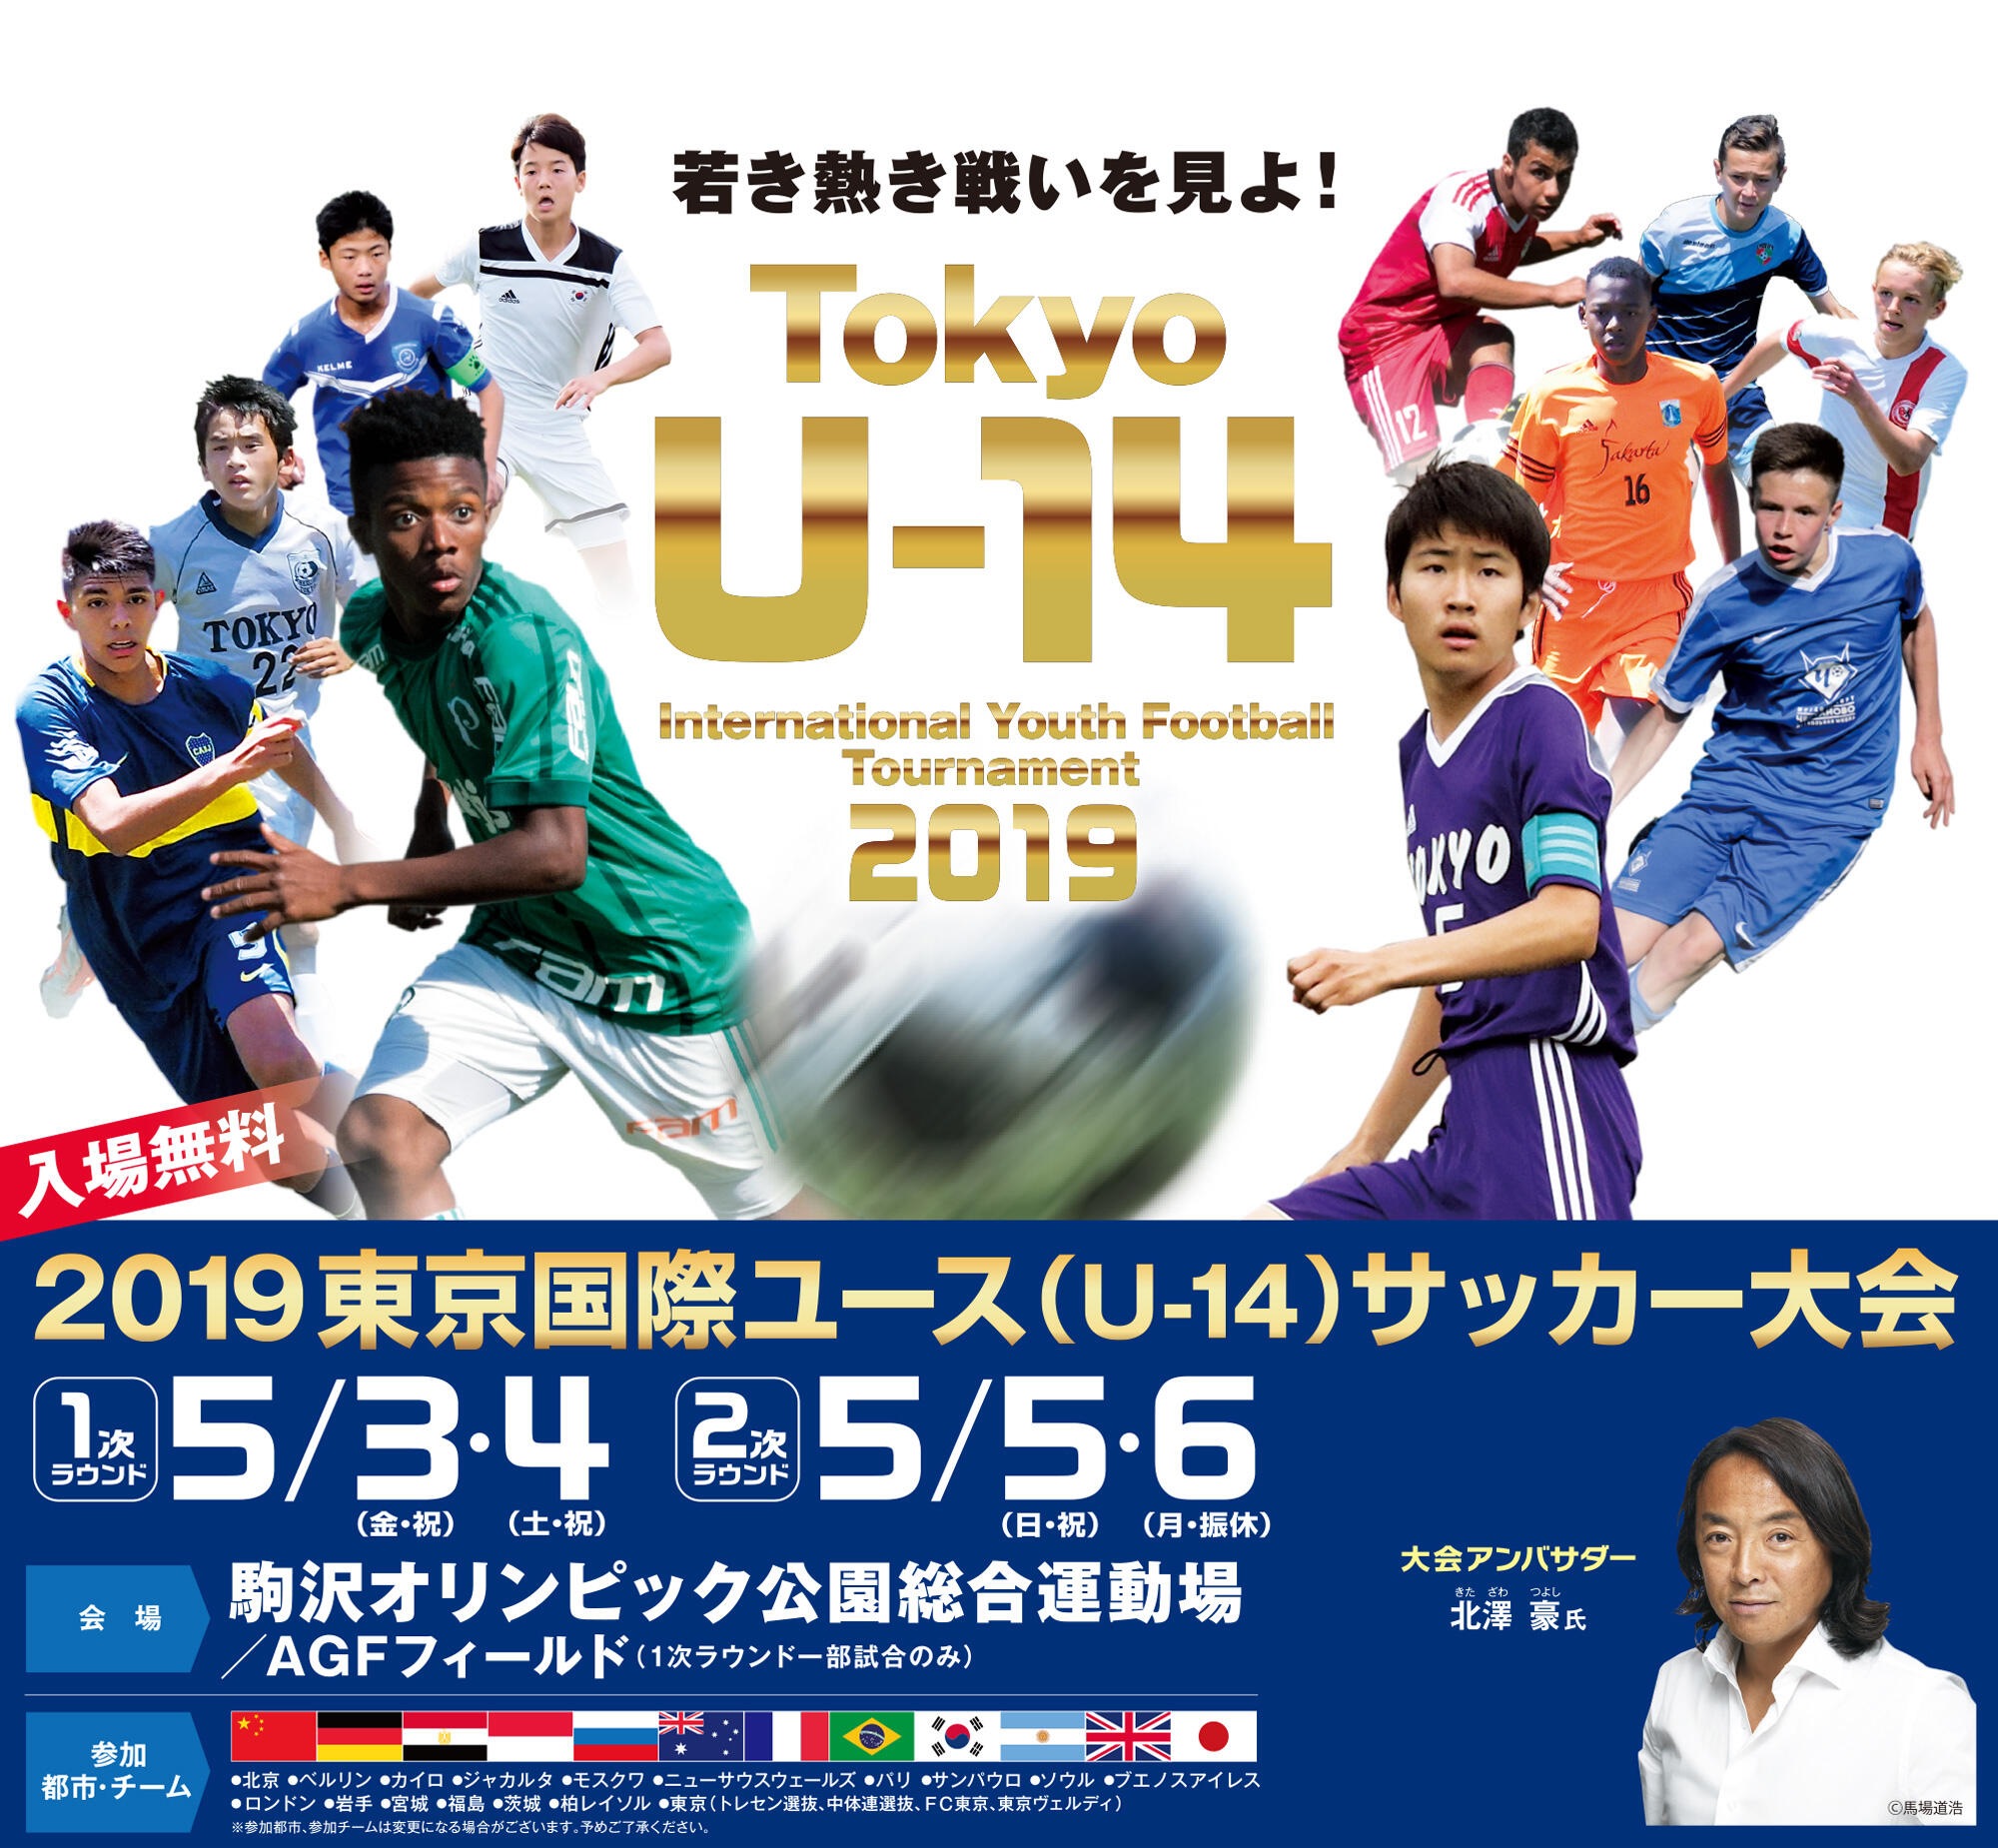 5 3 6 柏レイソルu 14が 19東京国際ユース U 14 サッカー大会 に出場 お知らせ情報